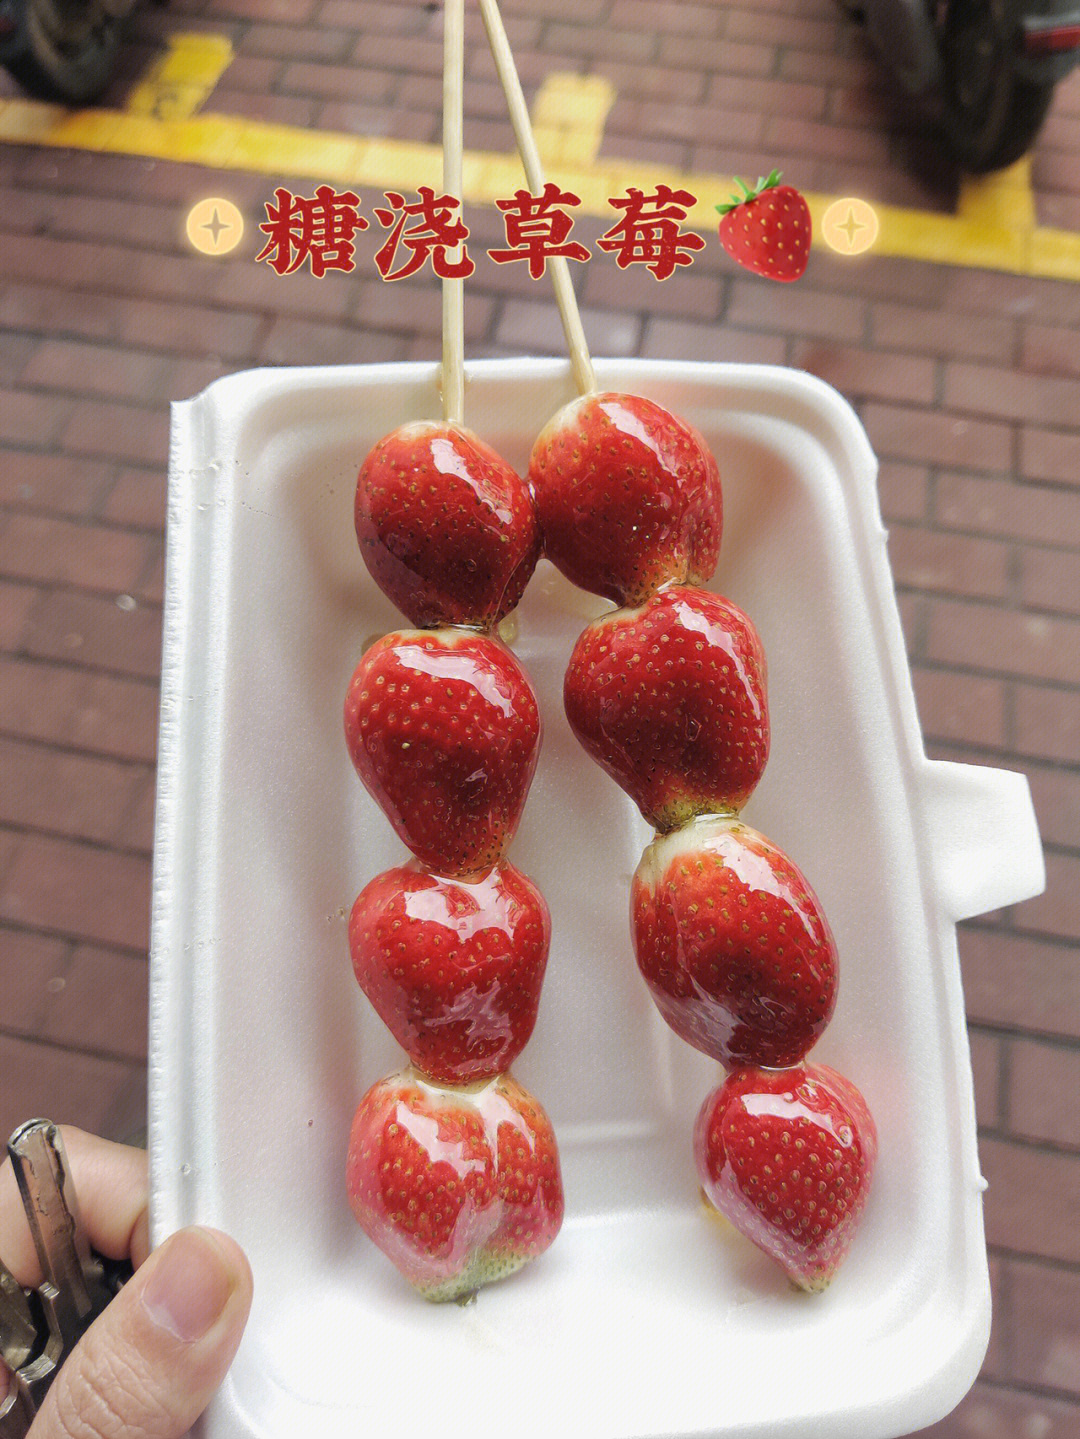 草莓糖sam叁凌虚图片